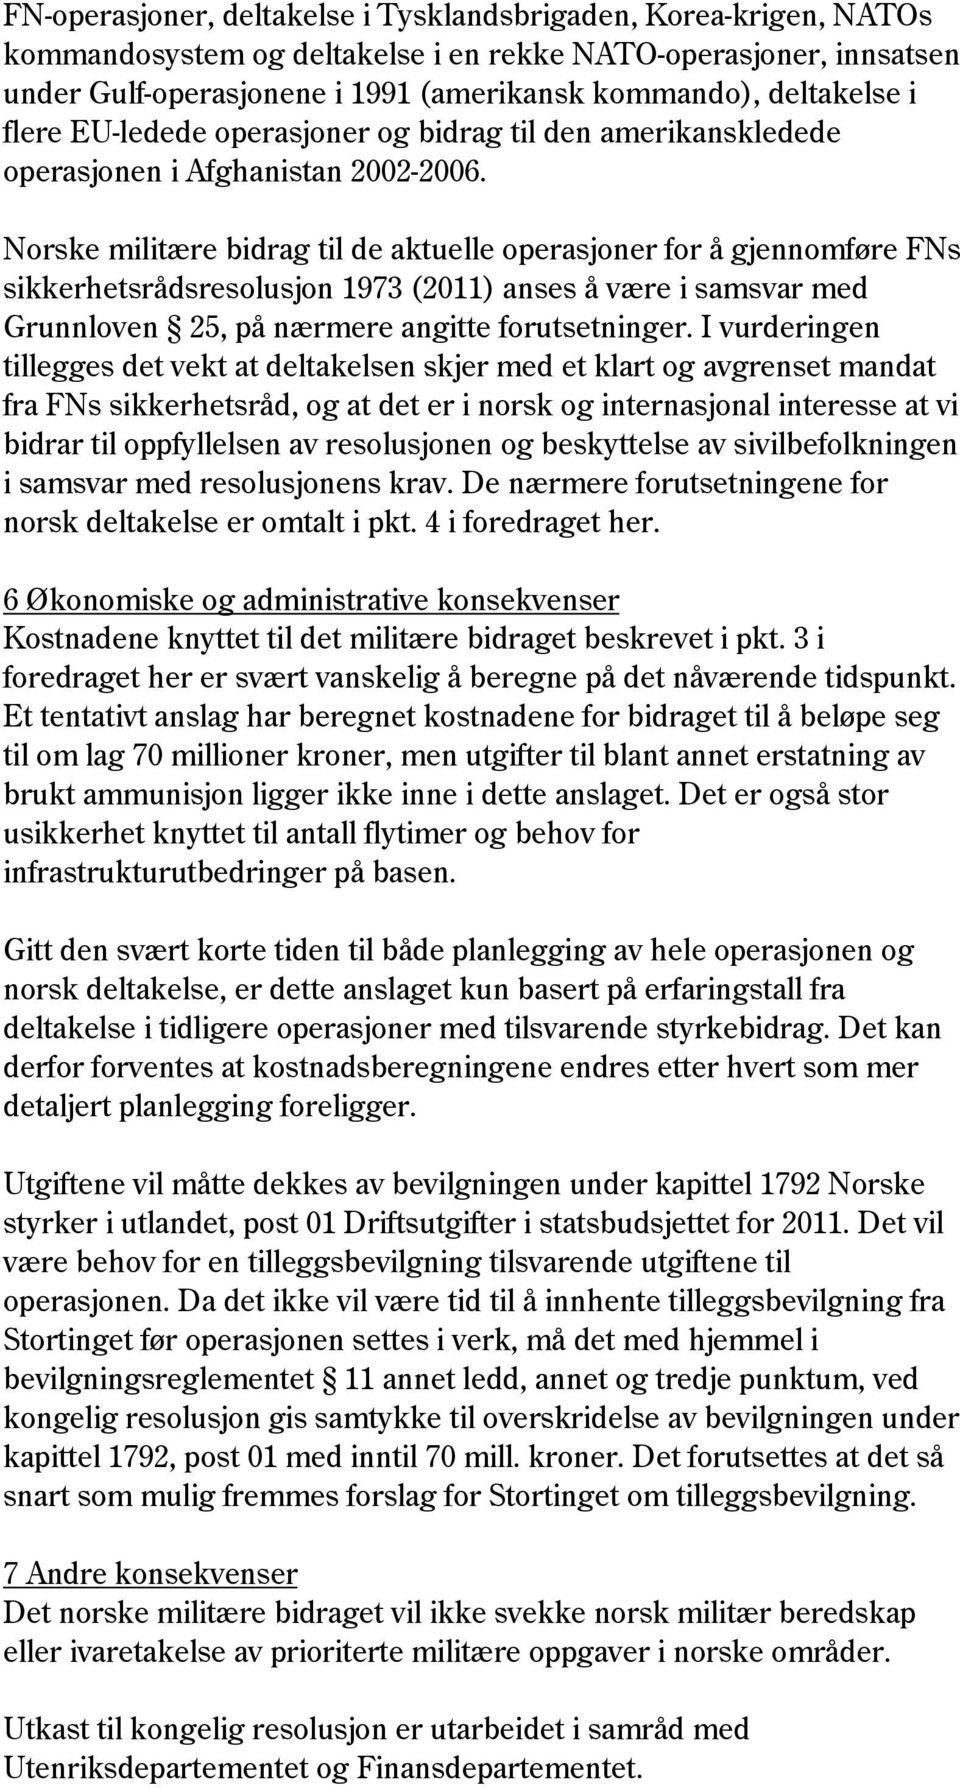 Norske militære bidrag til de aktuelle operasjoner for å gjennomføre FNs sikkerhetsrådsresolusjon 1973 (2011) anses å være i samsvar med Grunnloven 25, på nærmere angitte forutsetninger.